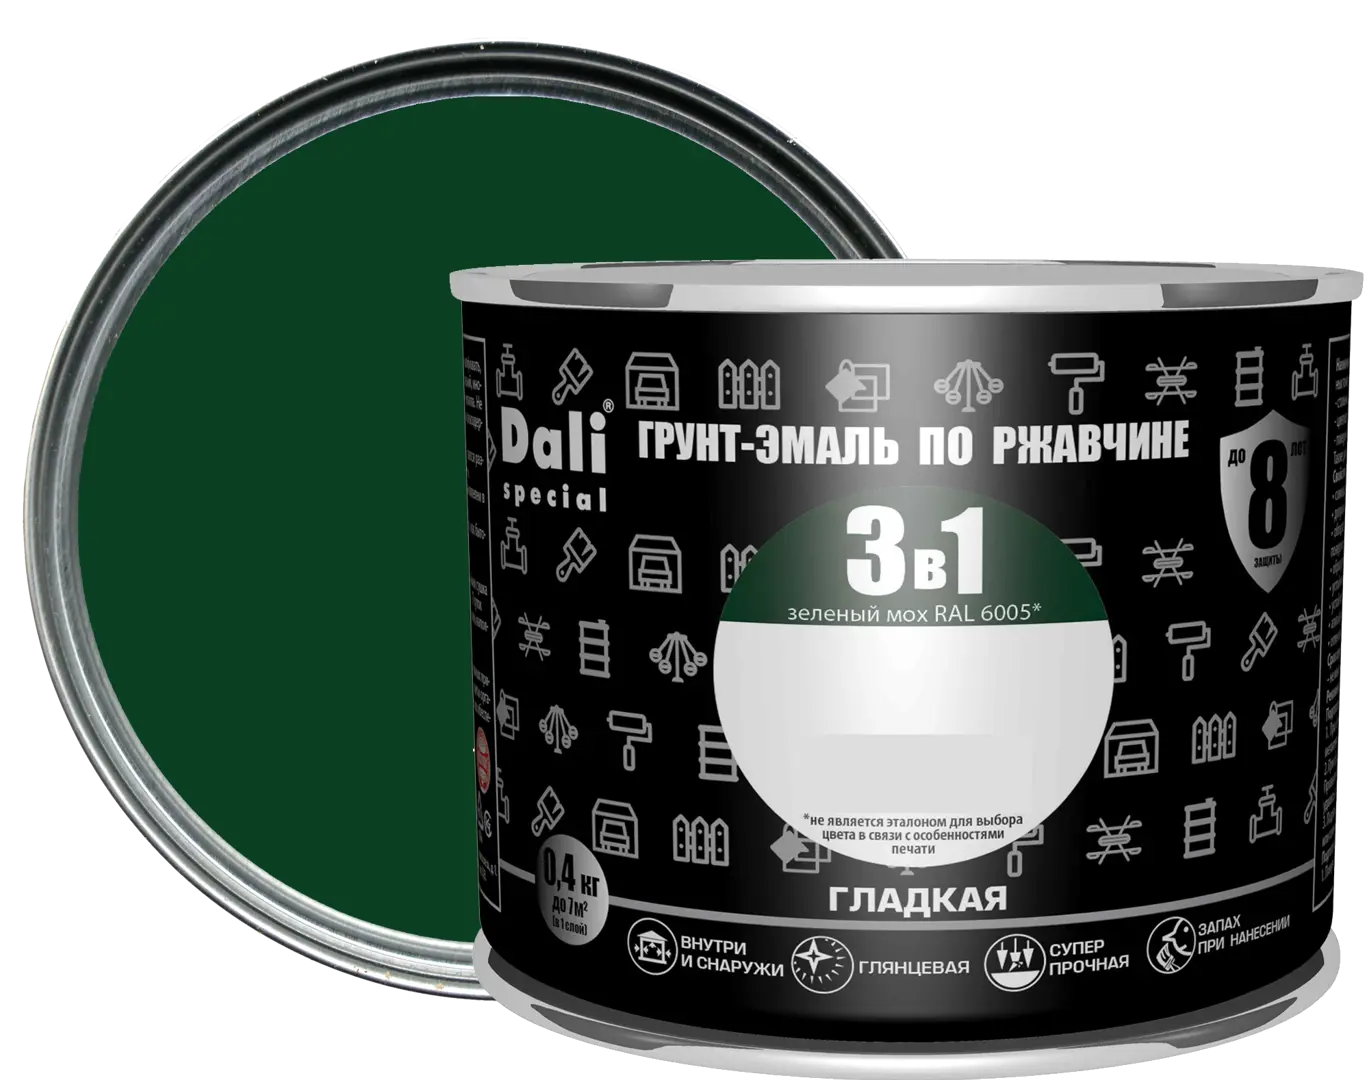 грунт эмаль по ржавчине 3 в 1 profilux гладкая зелёный 0 9 кг Грунт-эмаль по ржавчине 3 в 1 Dali Special гладкая цвет зелёный мох 0.4 кг RAL 6005